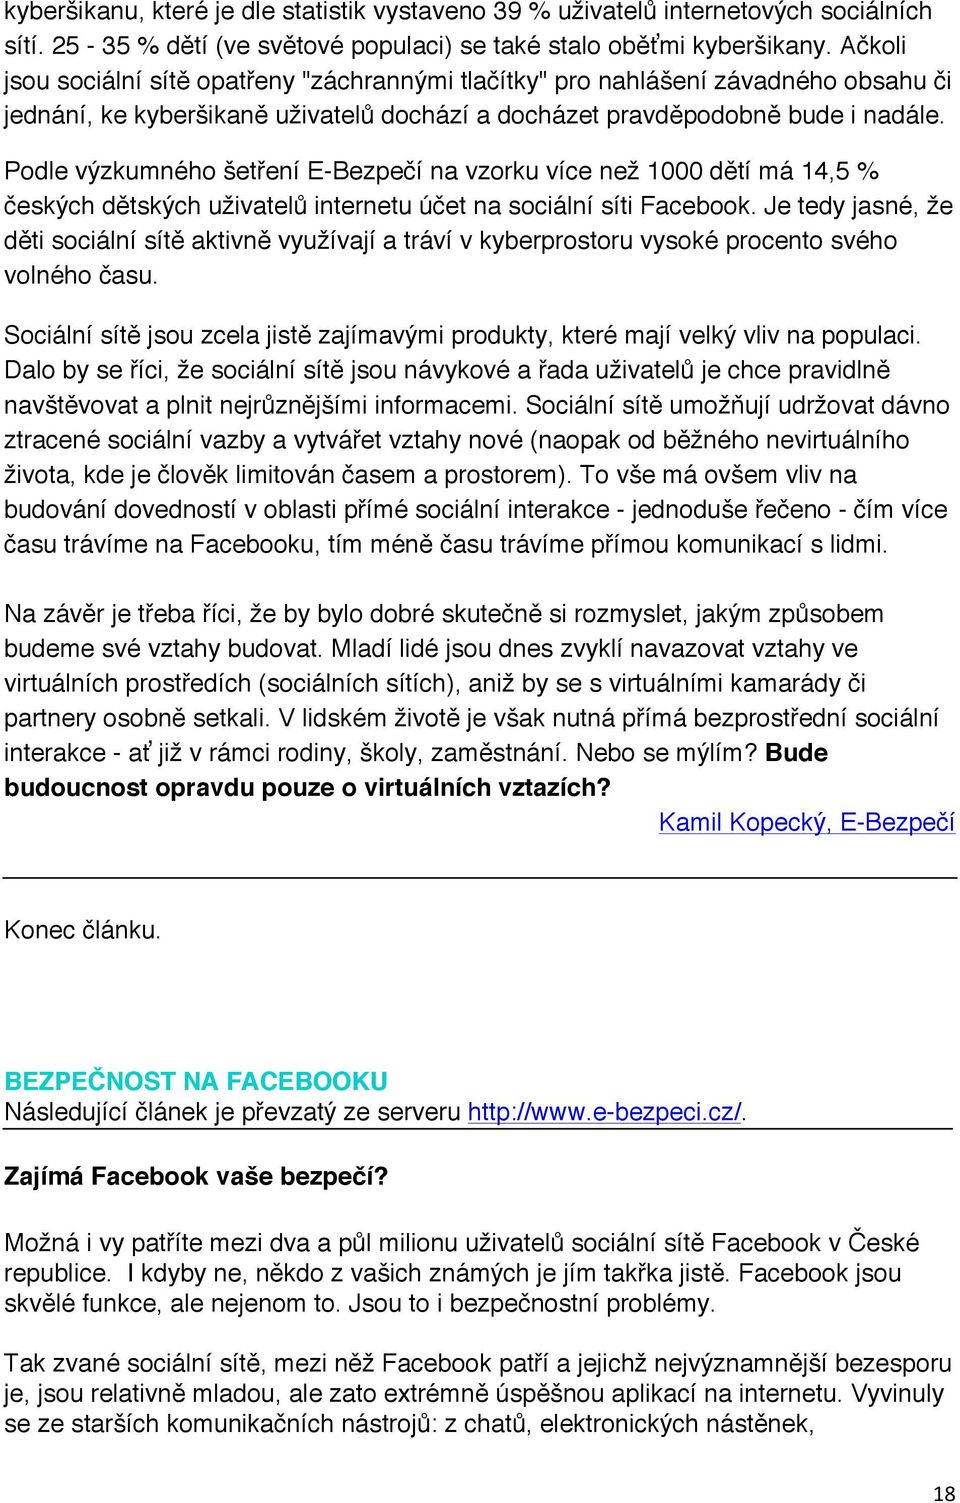 Podle výzkumného šetření E-Bezpečí na vzorku více než 1000 dětí má 14,5 % českých dětských uživatelů internetu účet na sociální síti Facebook.